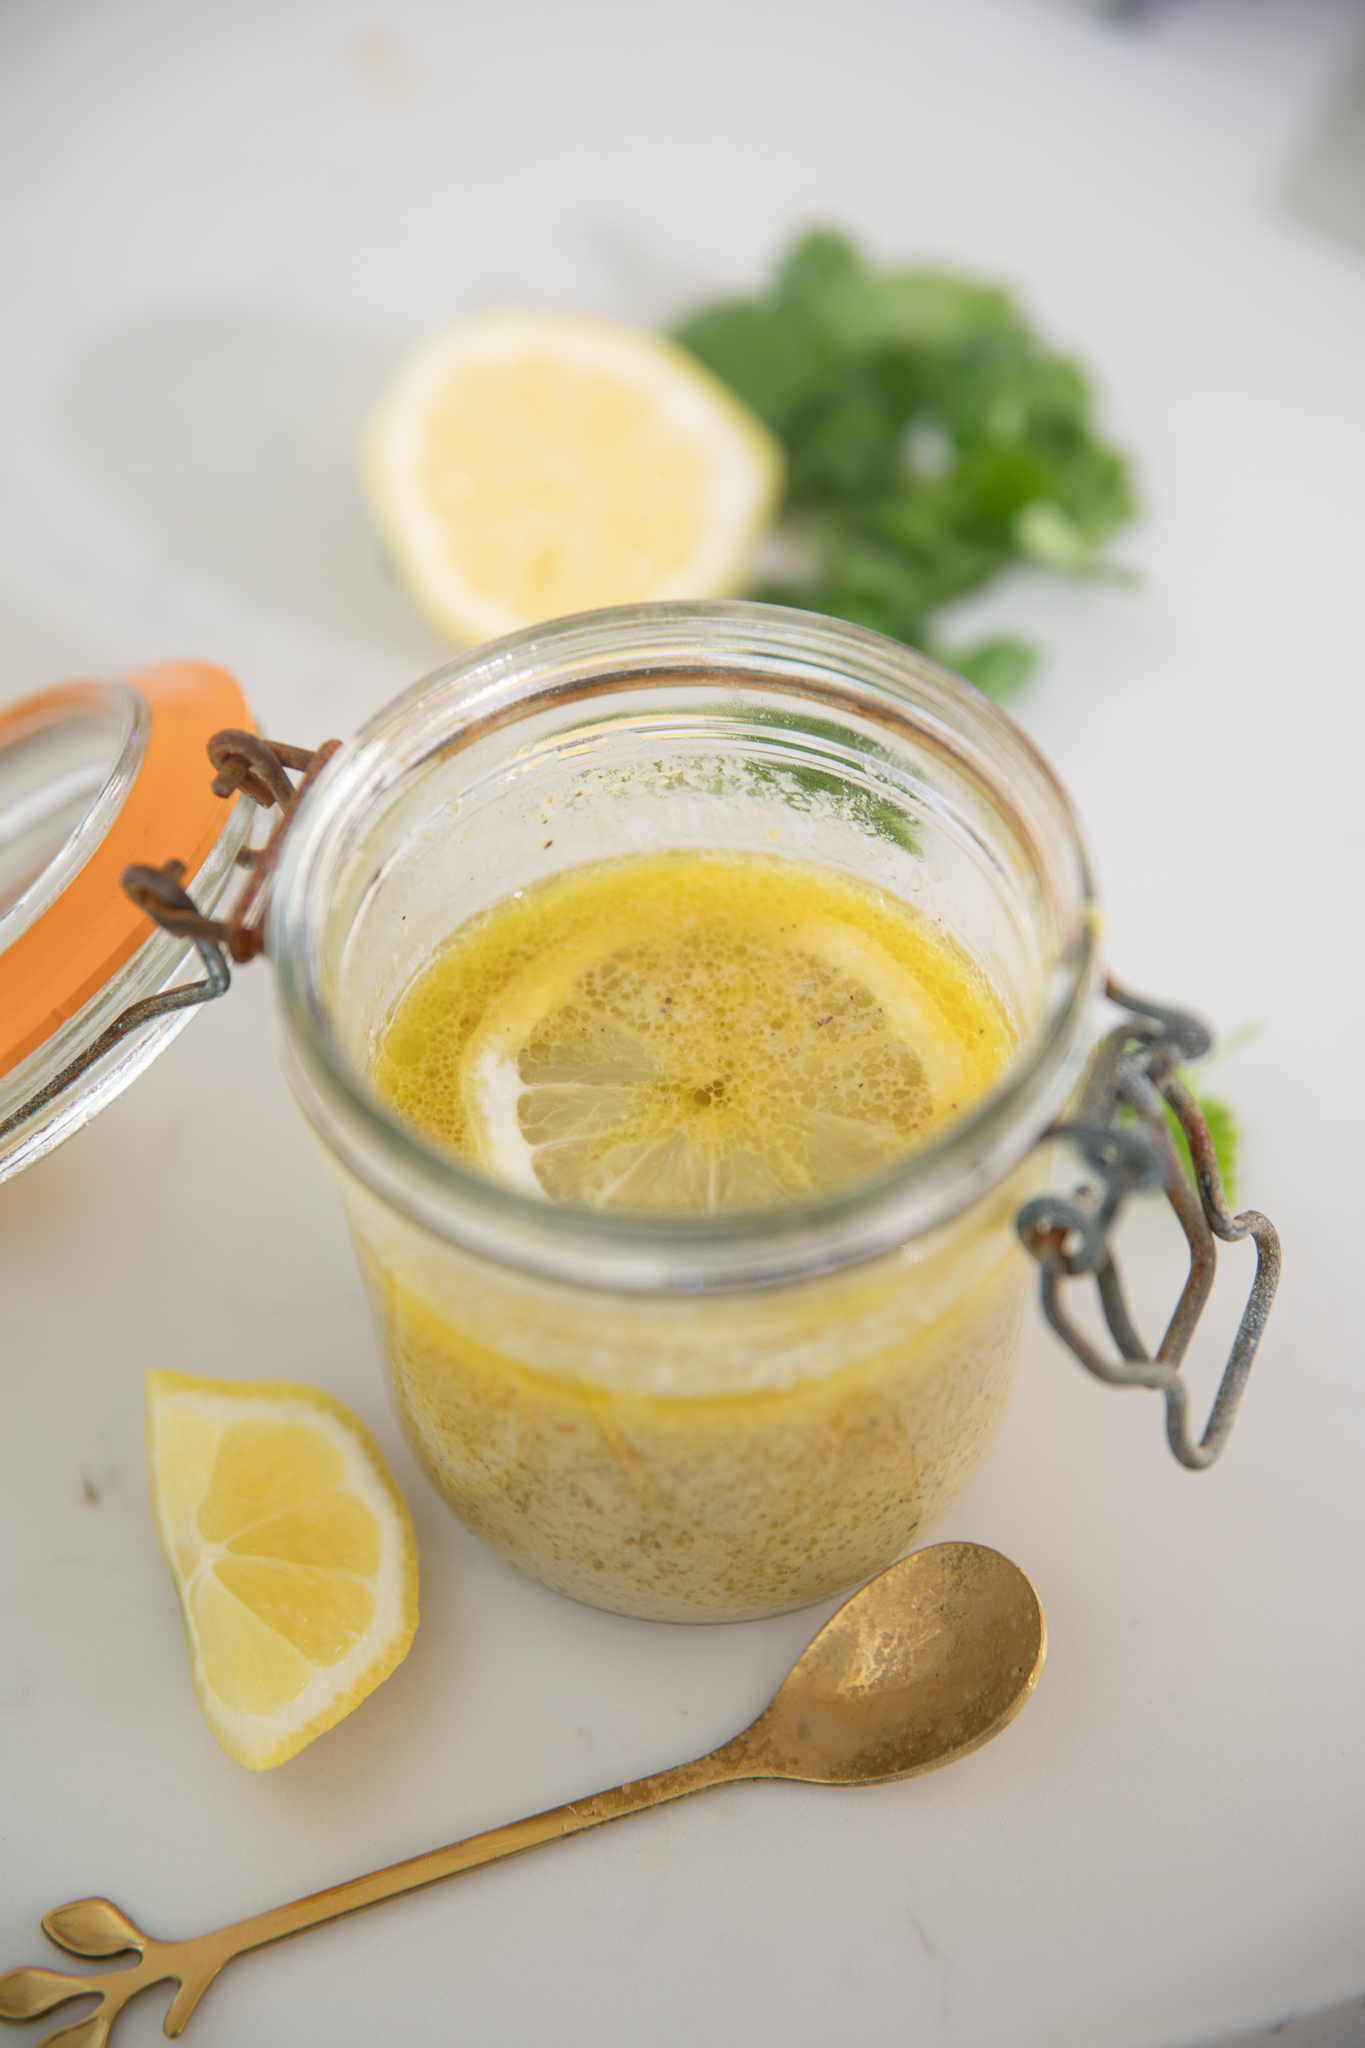 Lemon Vinaigrette with fresh lemons inside the jar